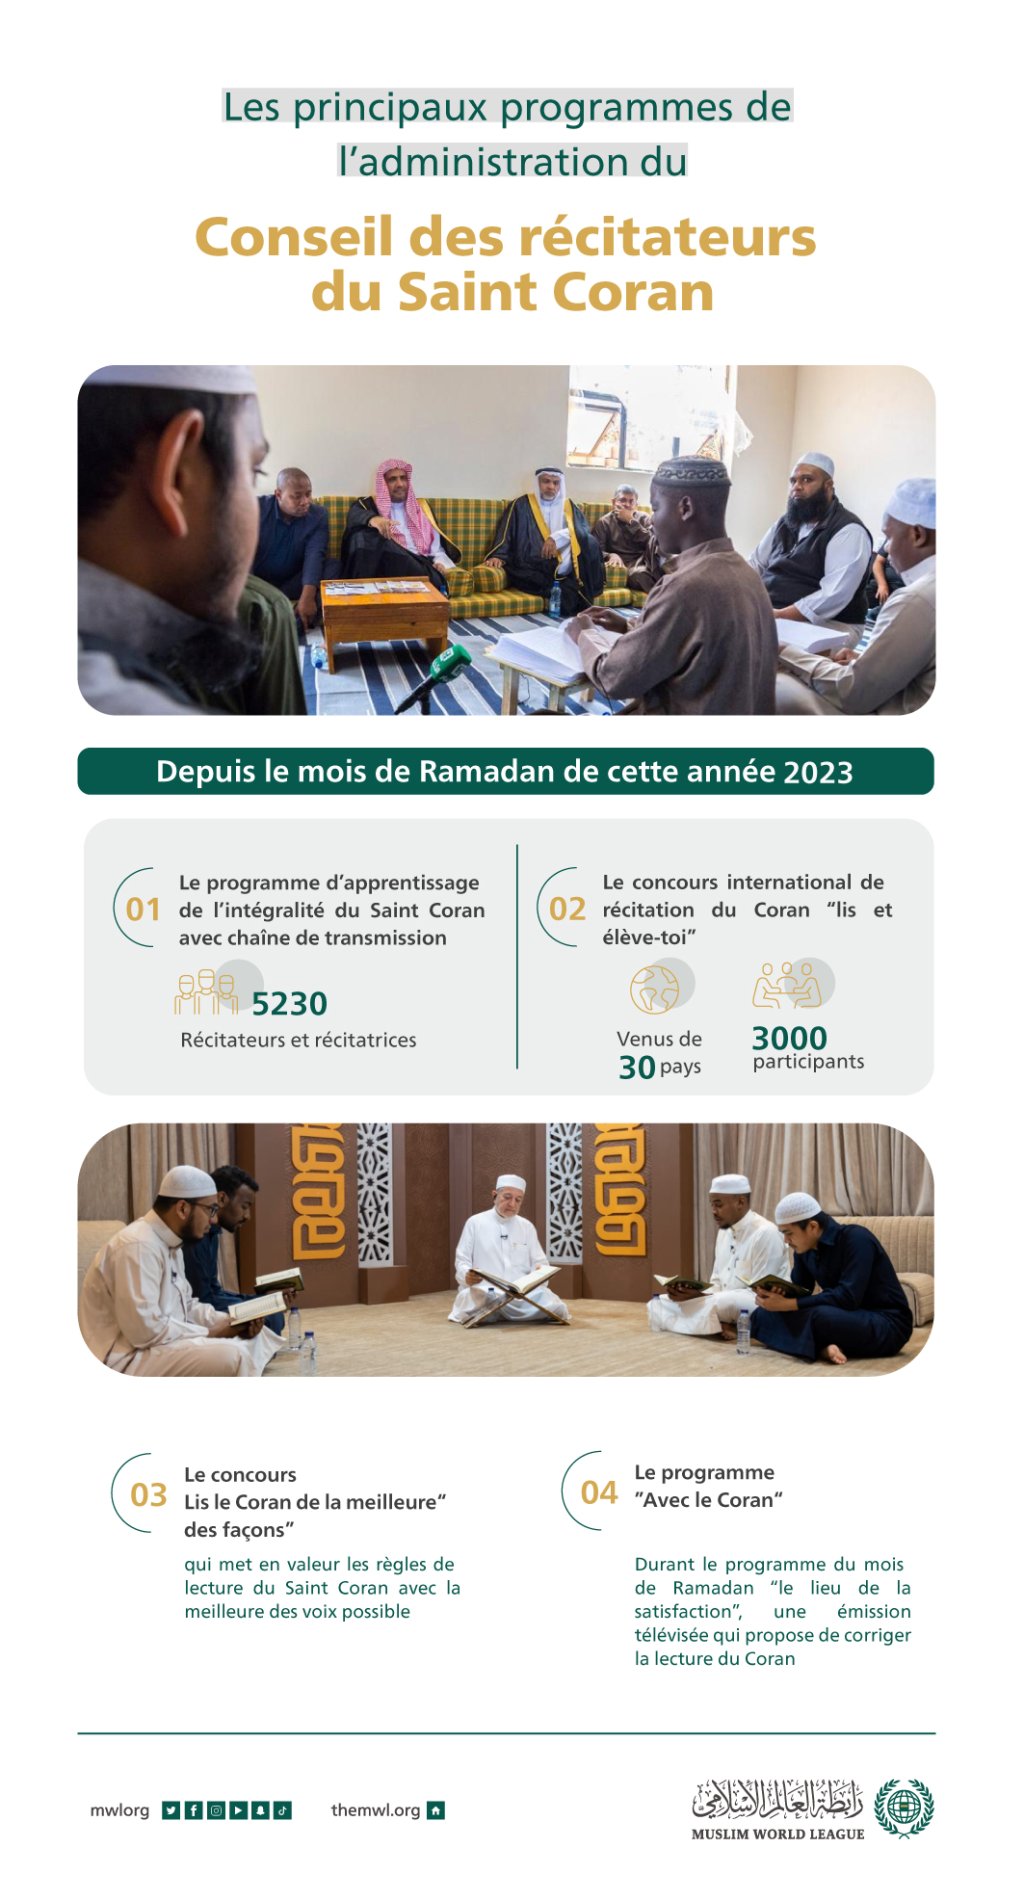 Les principaux programmes du Conseil des récitateurs du Saint Coran,affilié à la Ligue islamique mondiale durant cette année 2023